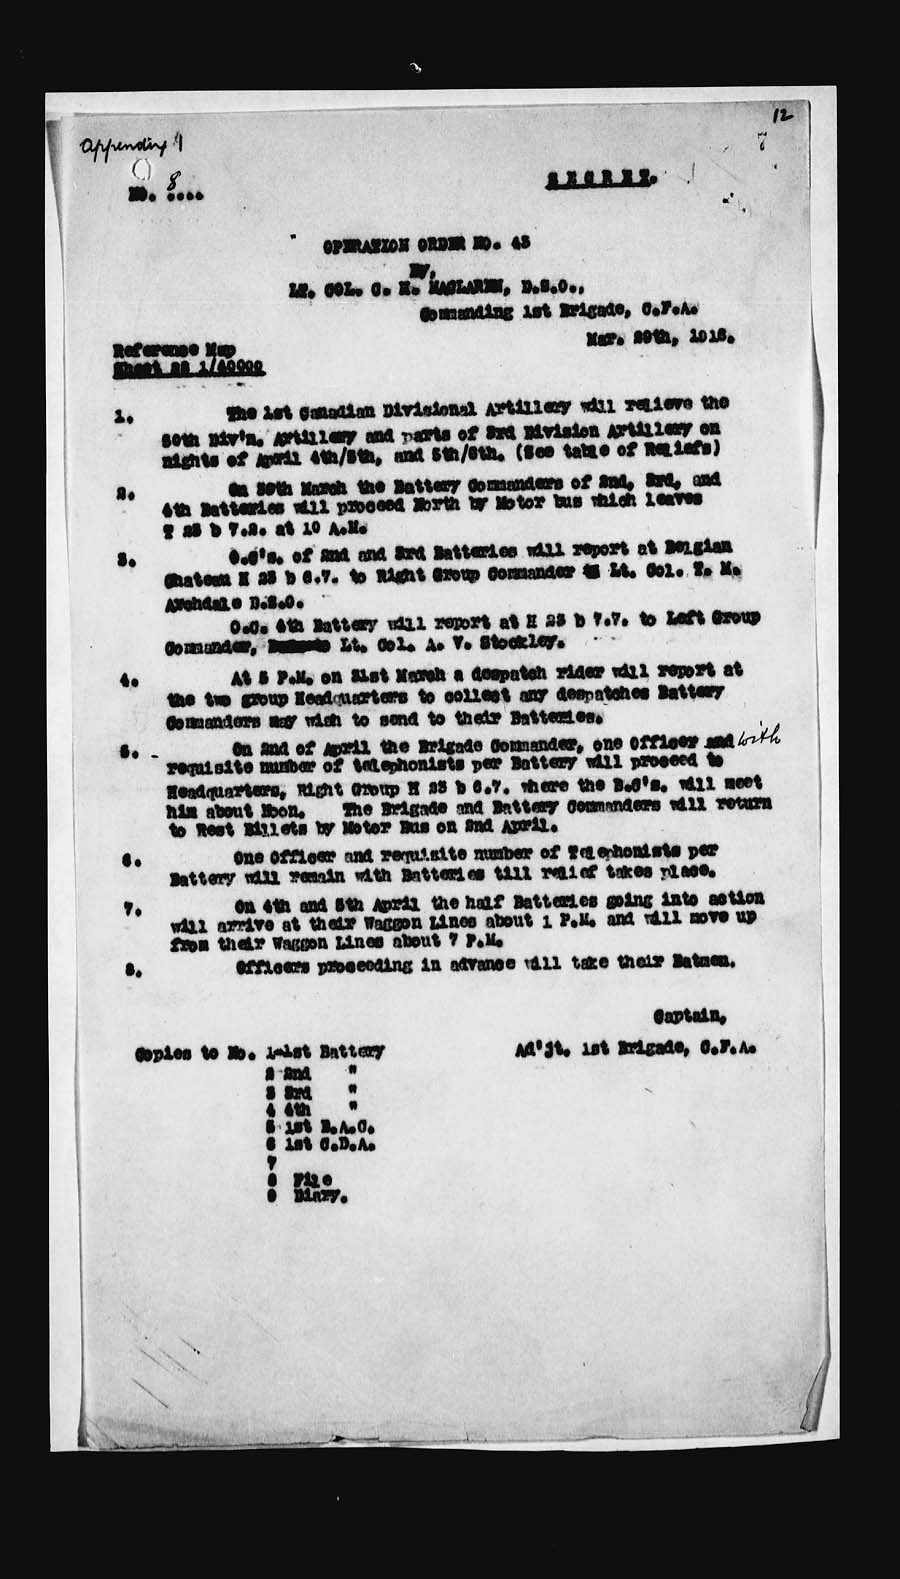 War Diaries 1st. Bde. C.F.A Appendix 8 Operation Order No. 43 March 29,1916